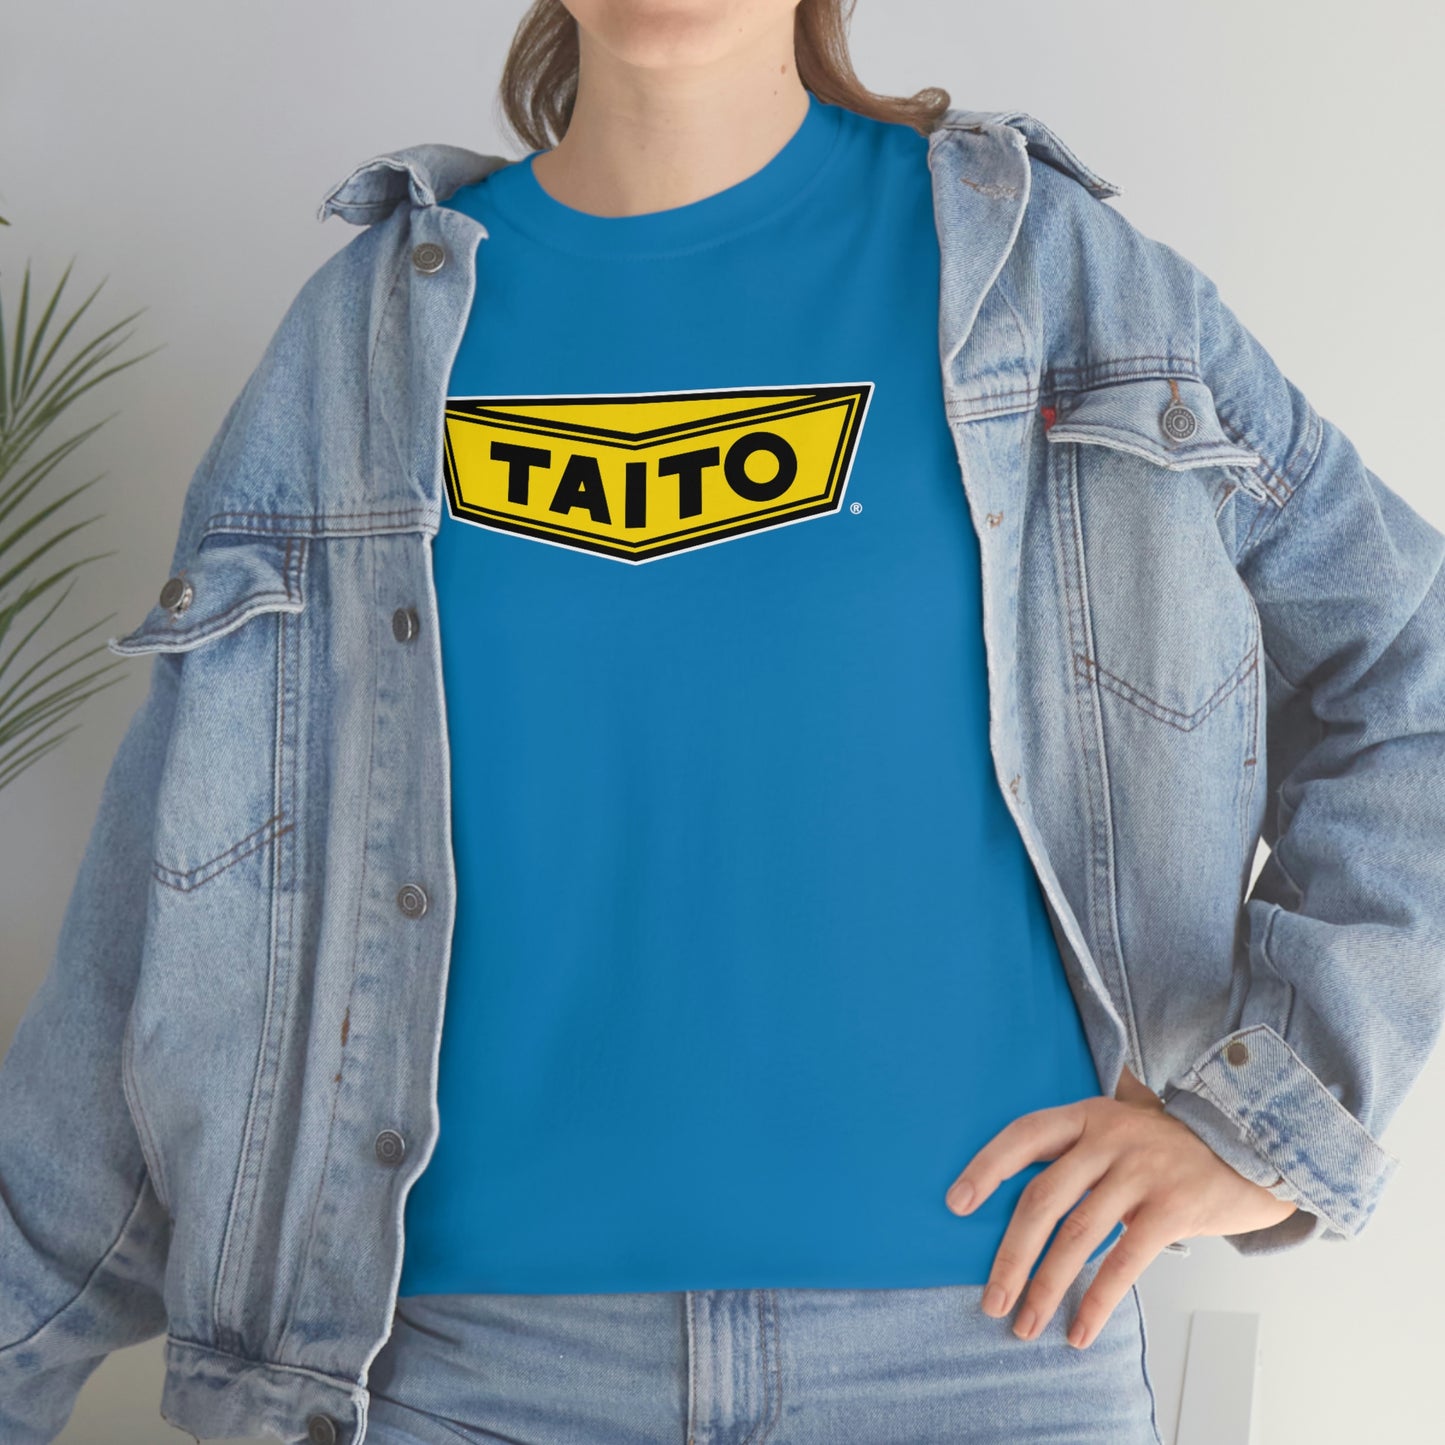 Taito T-Shirt